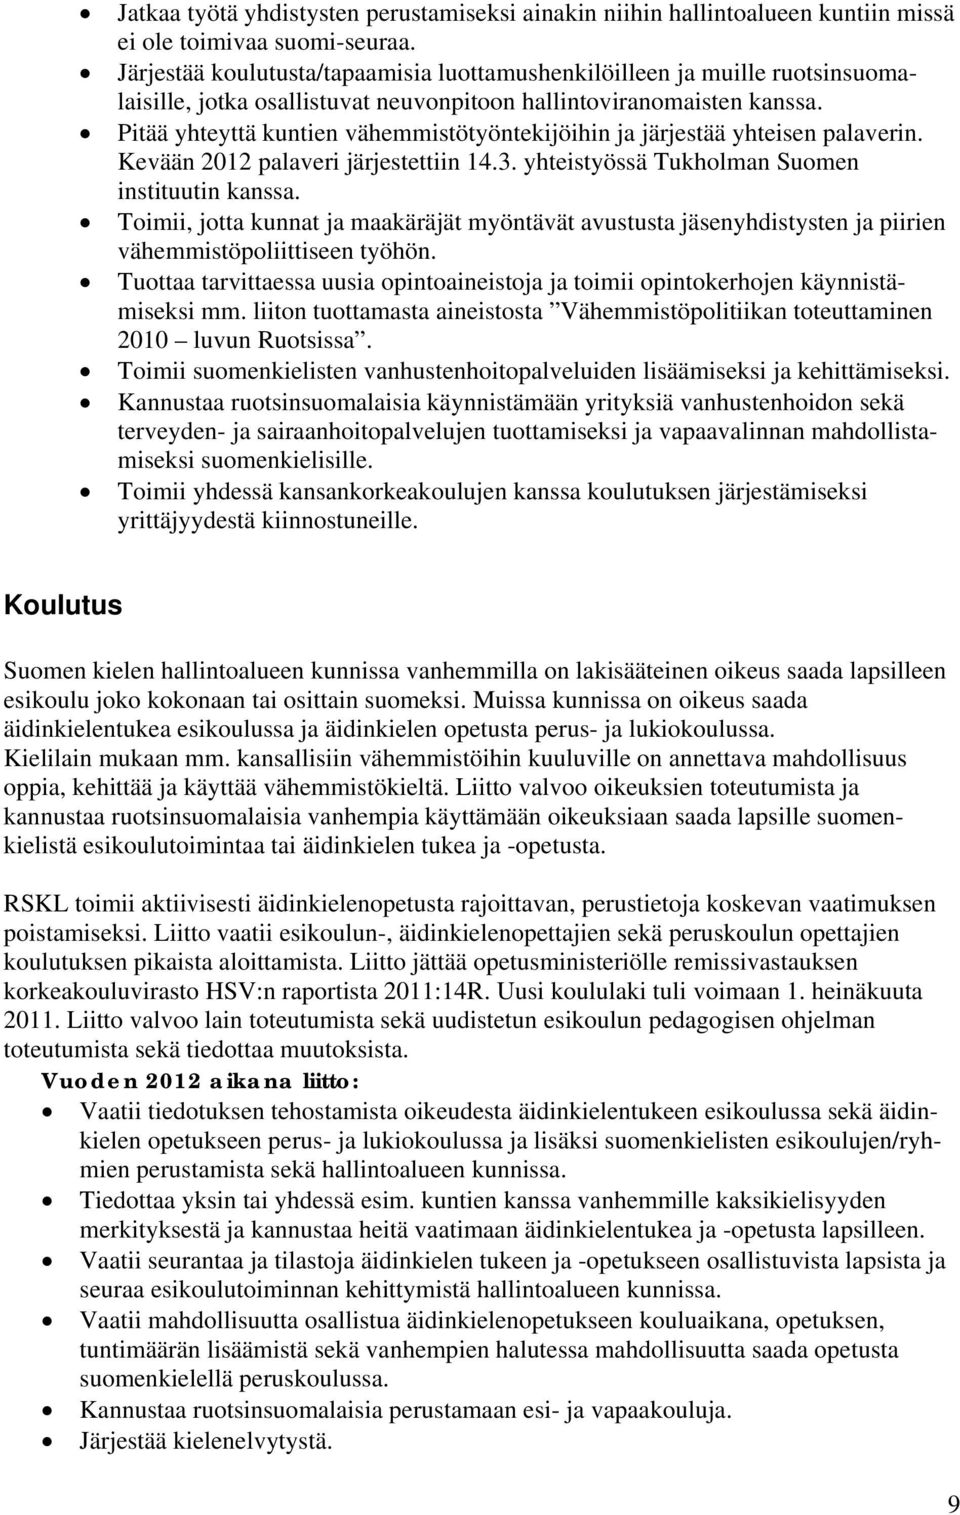 Pitää yhteyttä kuntien vähemmistötyöntekijöihin ja järjestää yhteisen palaverin. Kevään 2012 palaveri järjestettiin 14.3. yhteistyössä Tukholman Suomen instituutin kanssa.